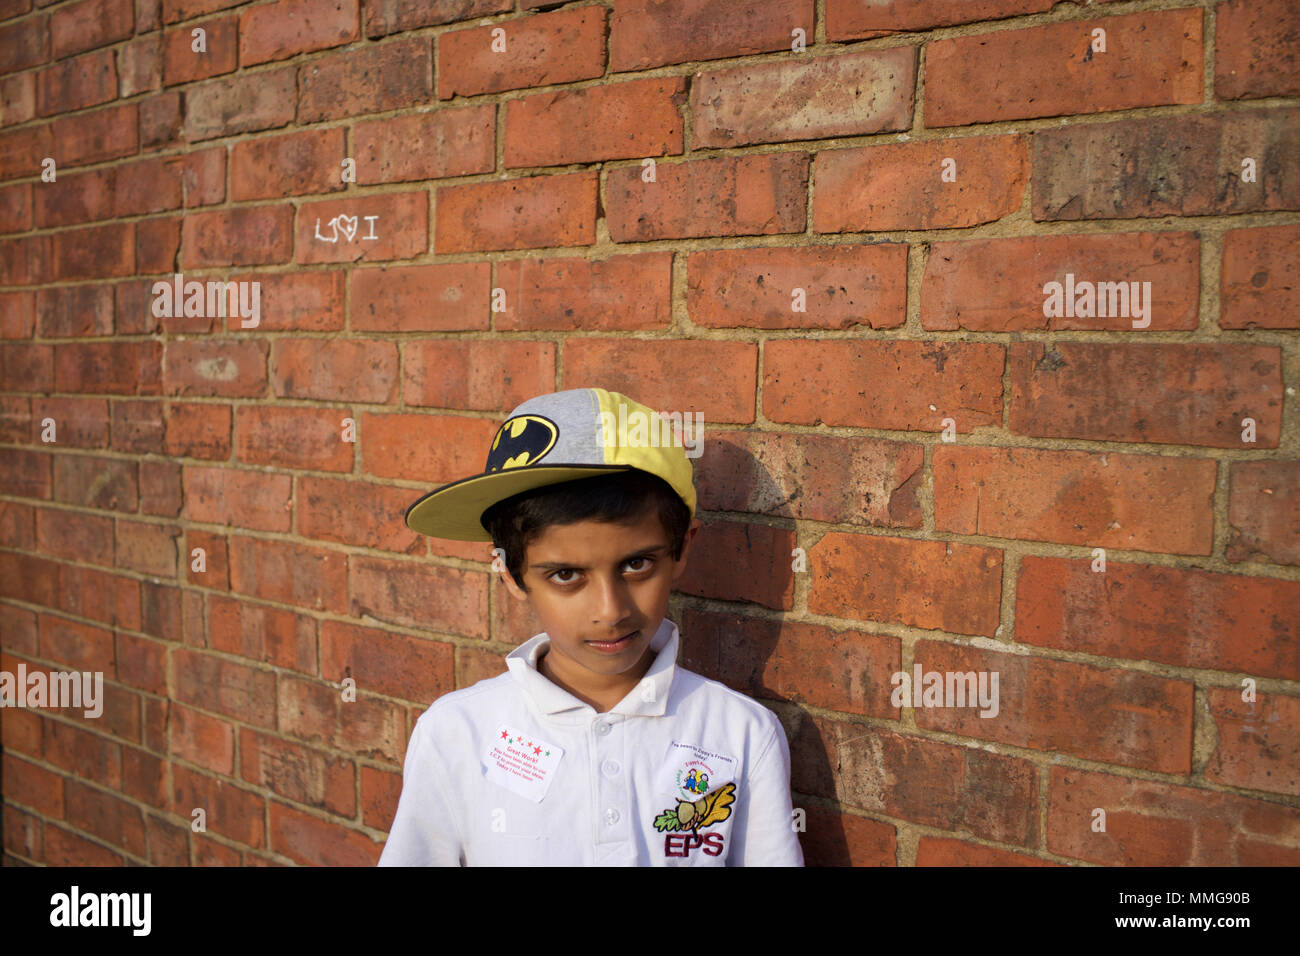 Garçon pakistanais à Batman Baseball Hat Standing par mur de briques, Rugby, Angleterre Banque D'Images